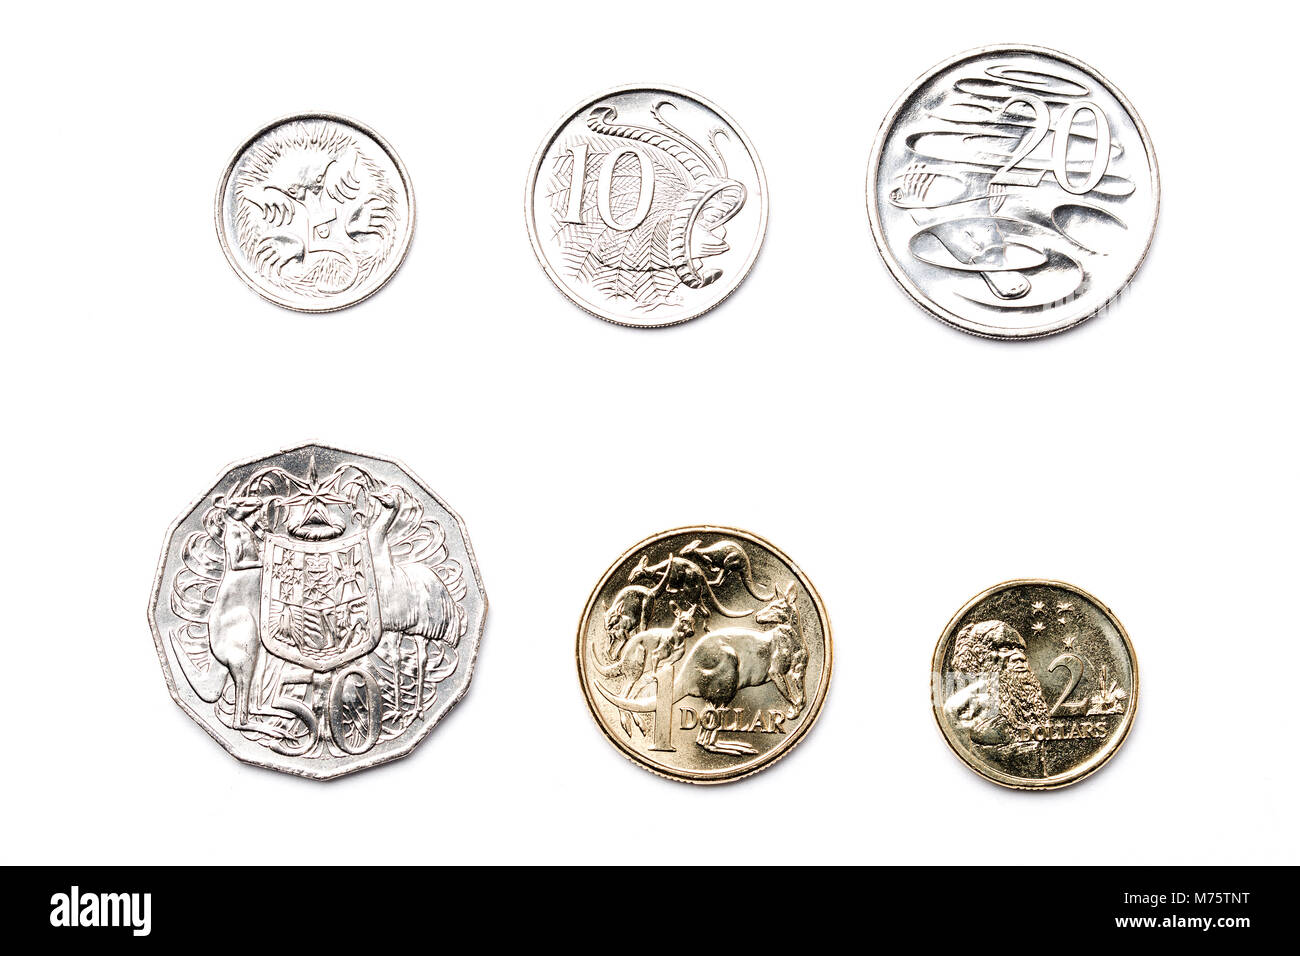 Pièces de monnaie australienne sur un fond blanc Banque D'Images